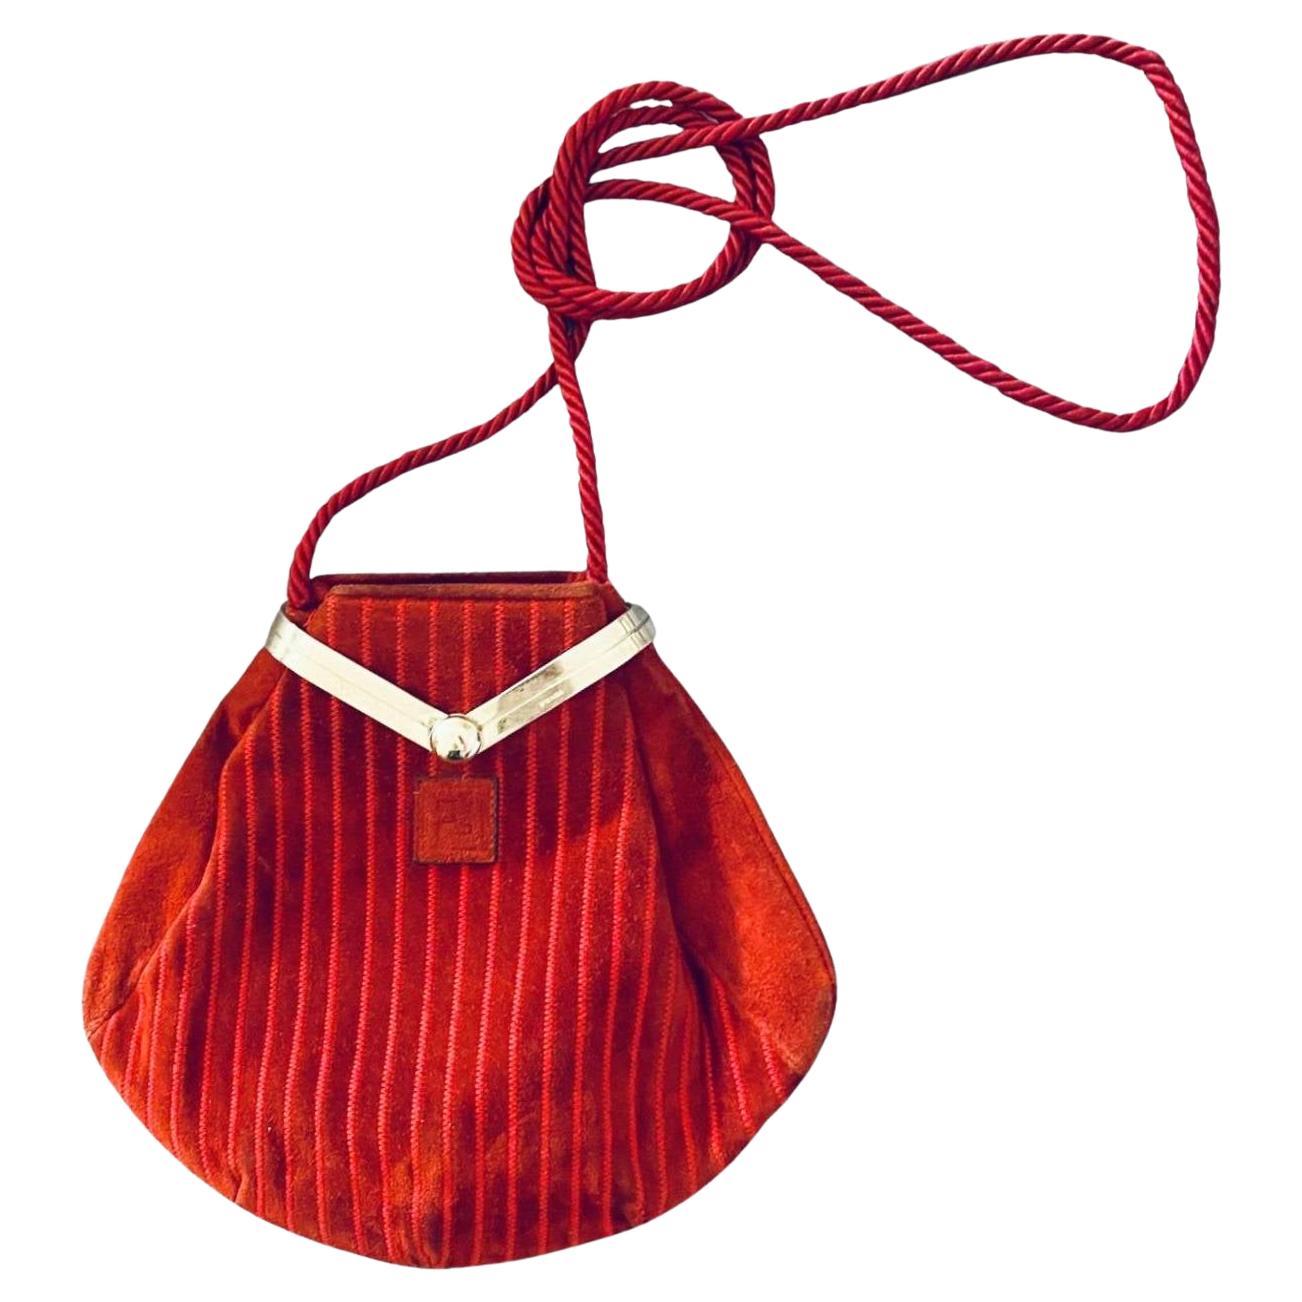 Ce sac Fendi des années 1980, unique en son genre, présente un extérieur en daim rouge avec des détails en zigzag et une fermeture à pochette dotée d'une élégante pièce métallique gravée du logo Fendi. A l'intérieur, le sac accueille une doublure en